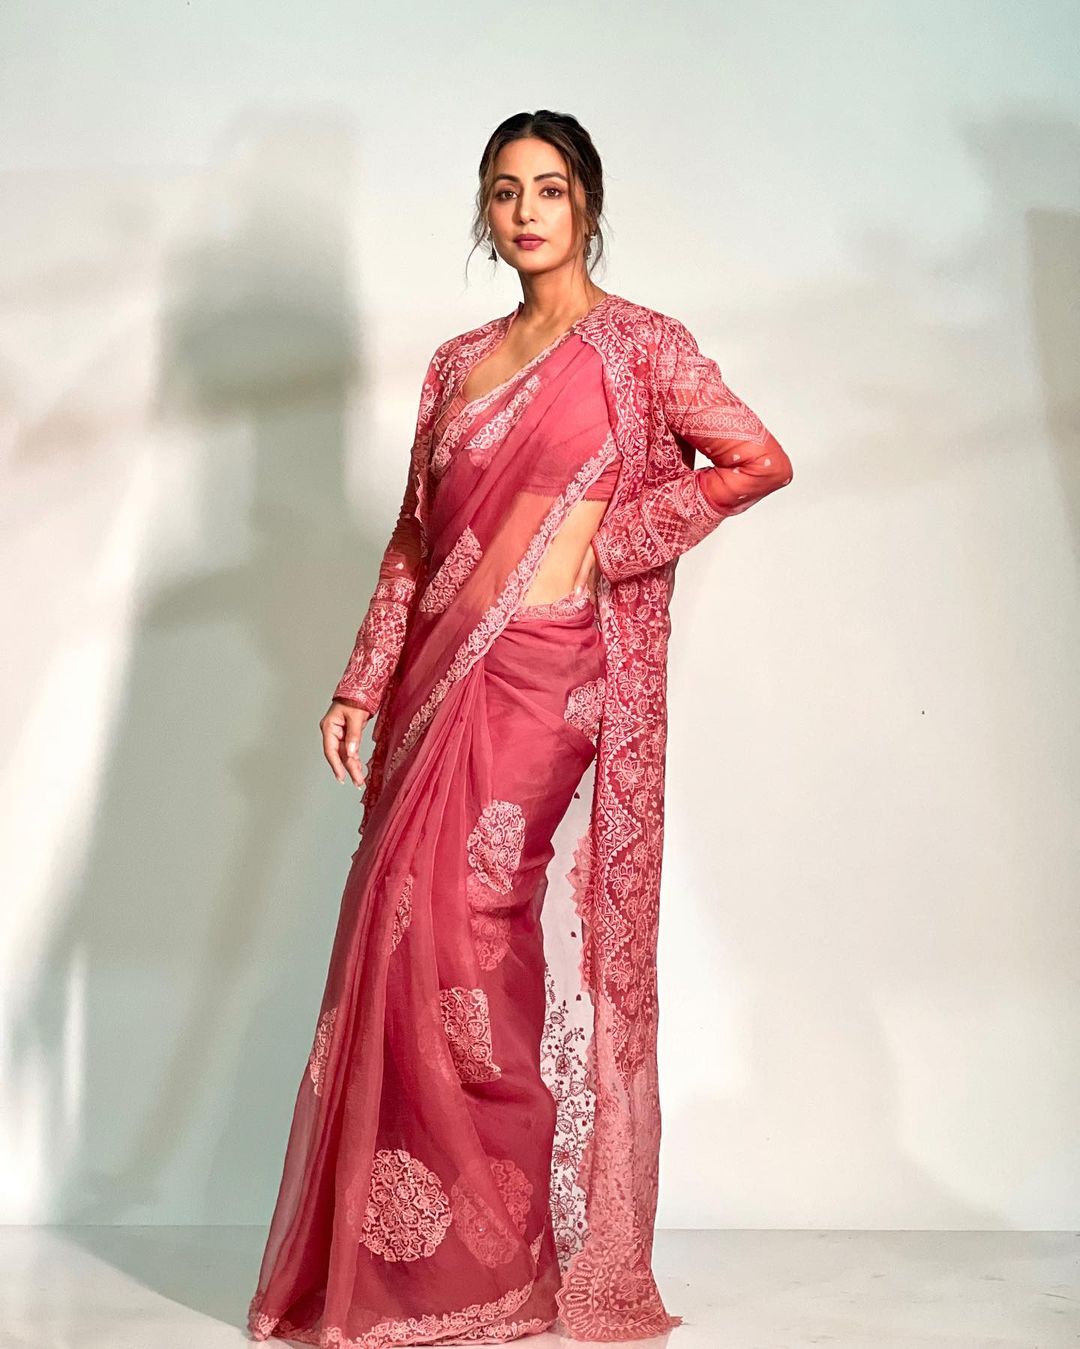 Hina Khan gives saree goals in an organza saree with a matching jacket.